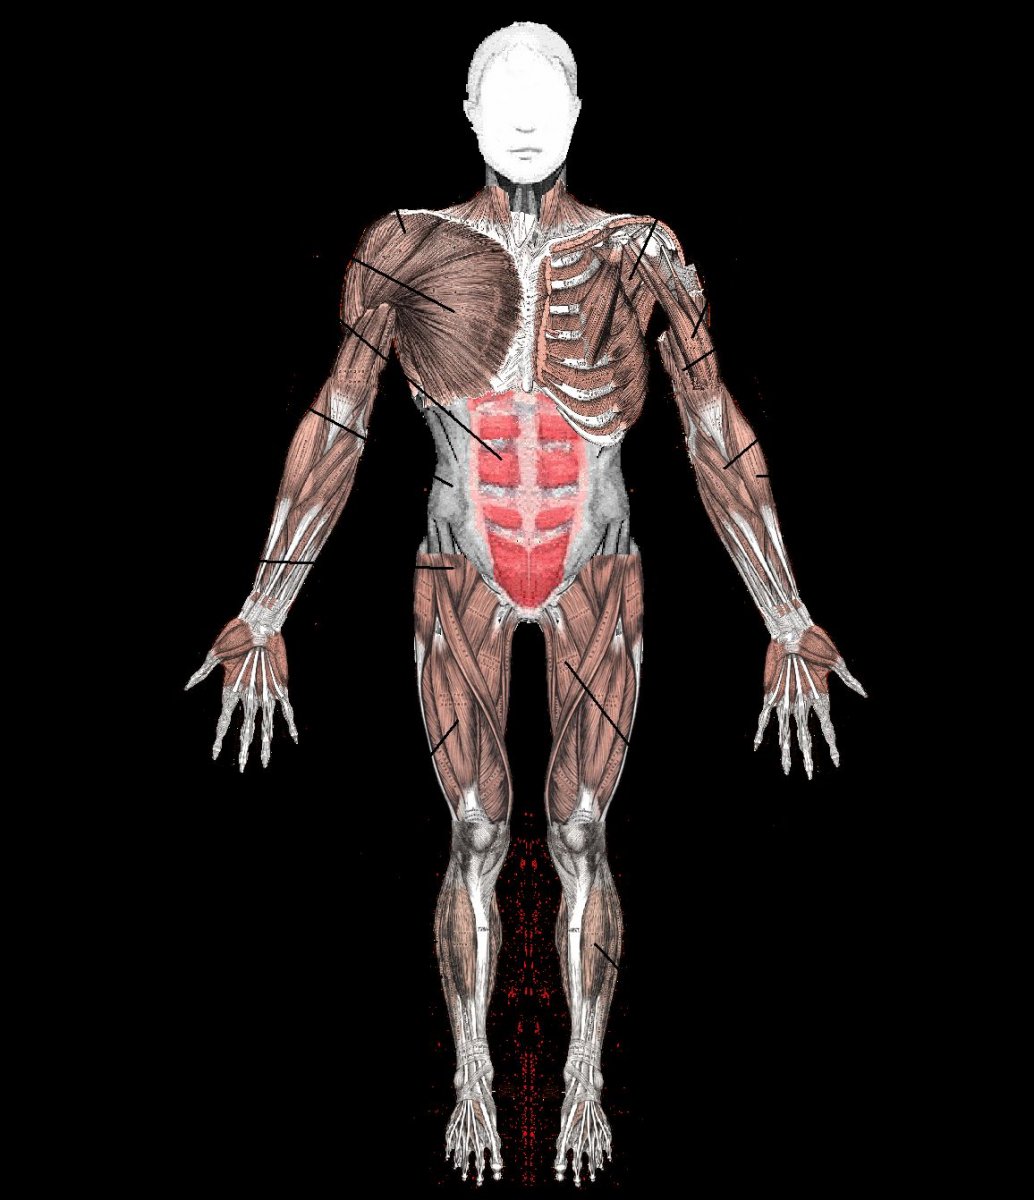 Человеческий скелет с мышцами